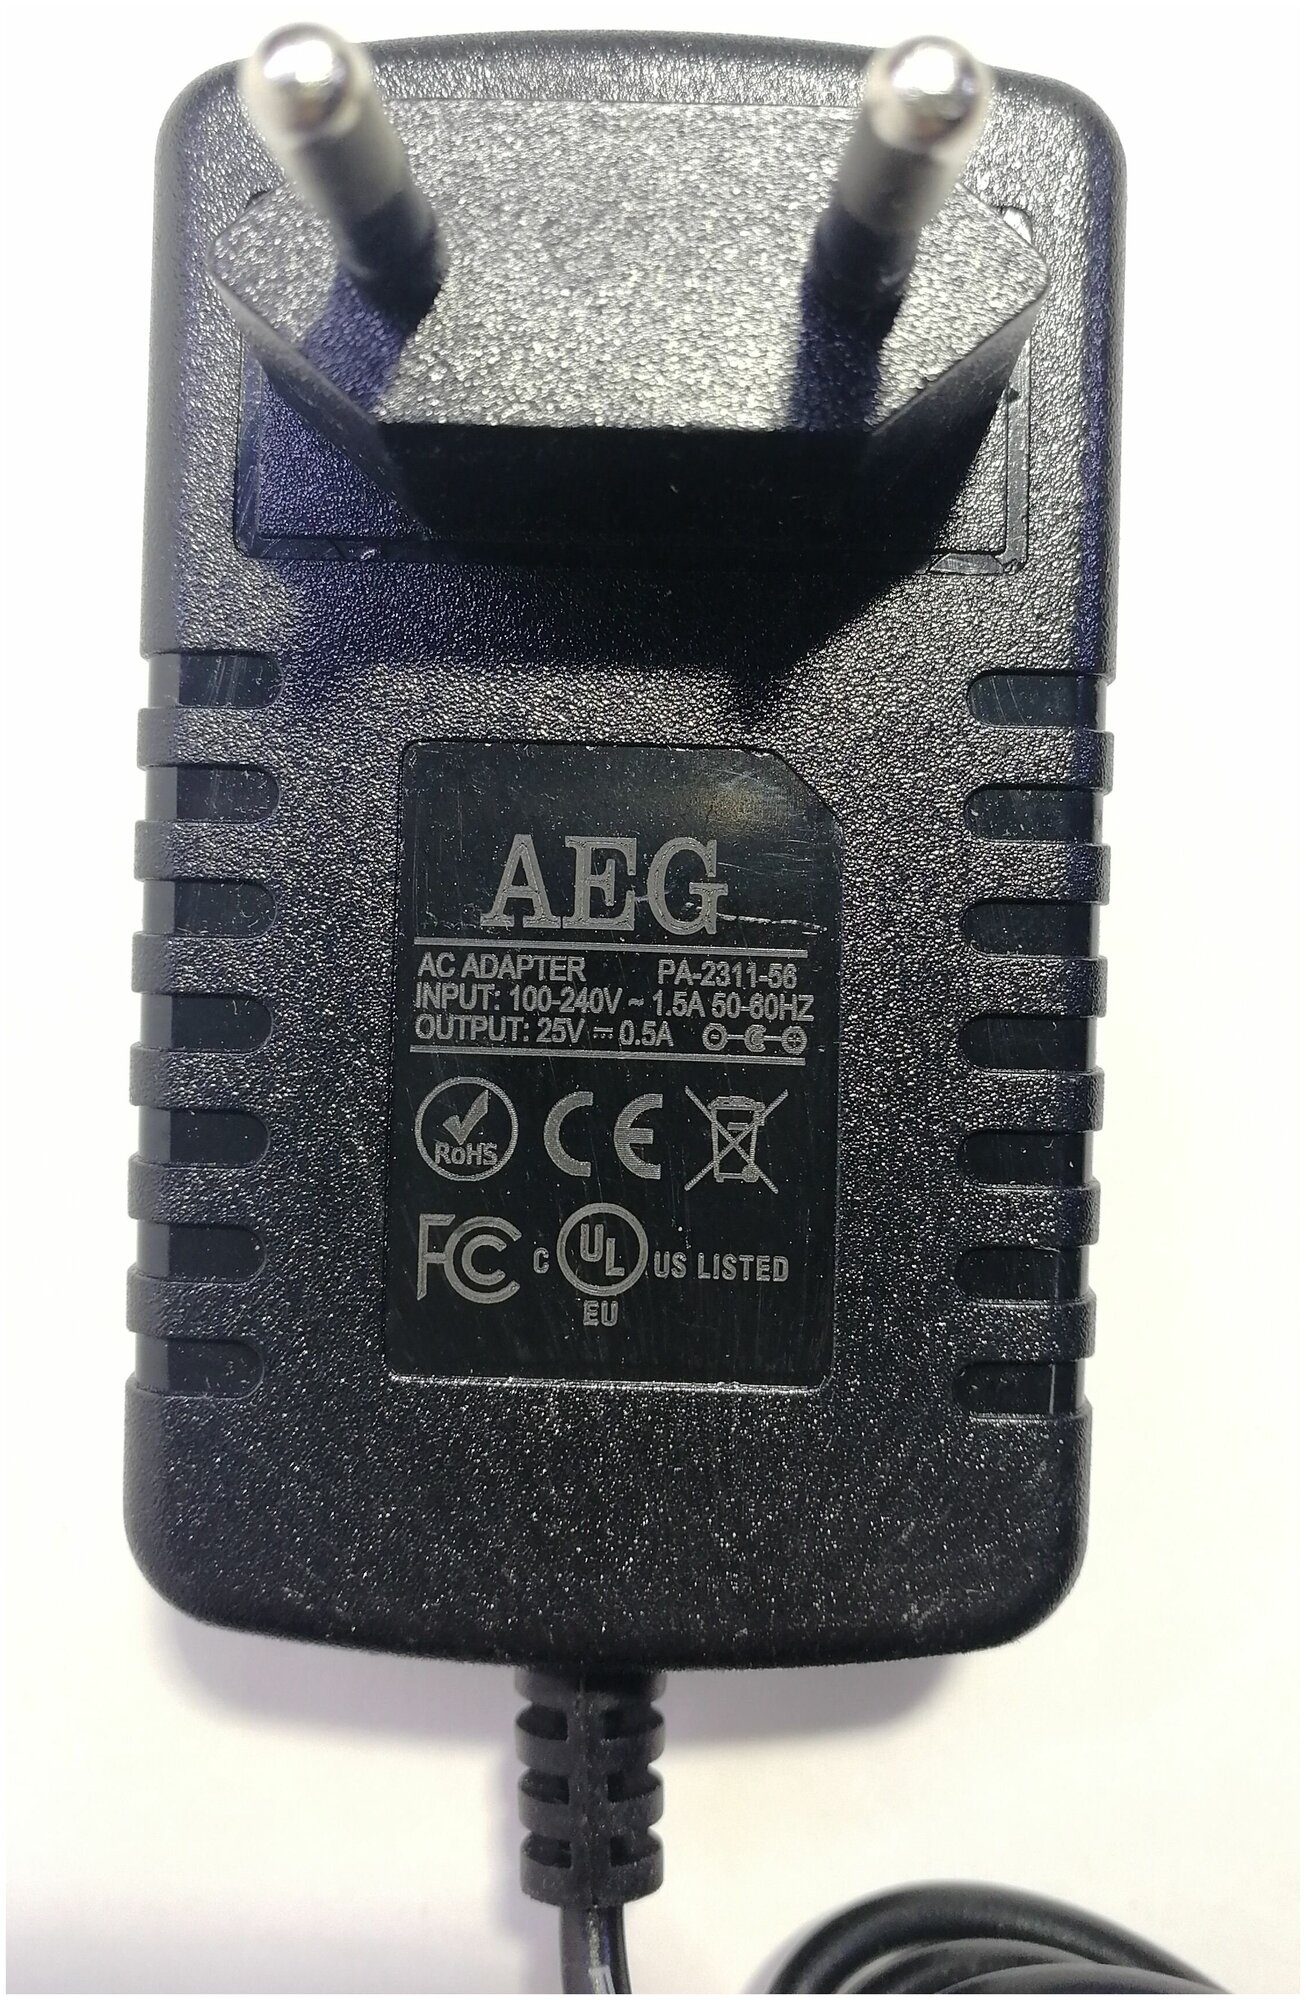 Сетевое зарядное устройство блок питания для аккумуляторных пылесосов Electrolux ergorapido, AEG DC 25v 0.5a